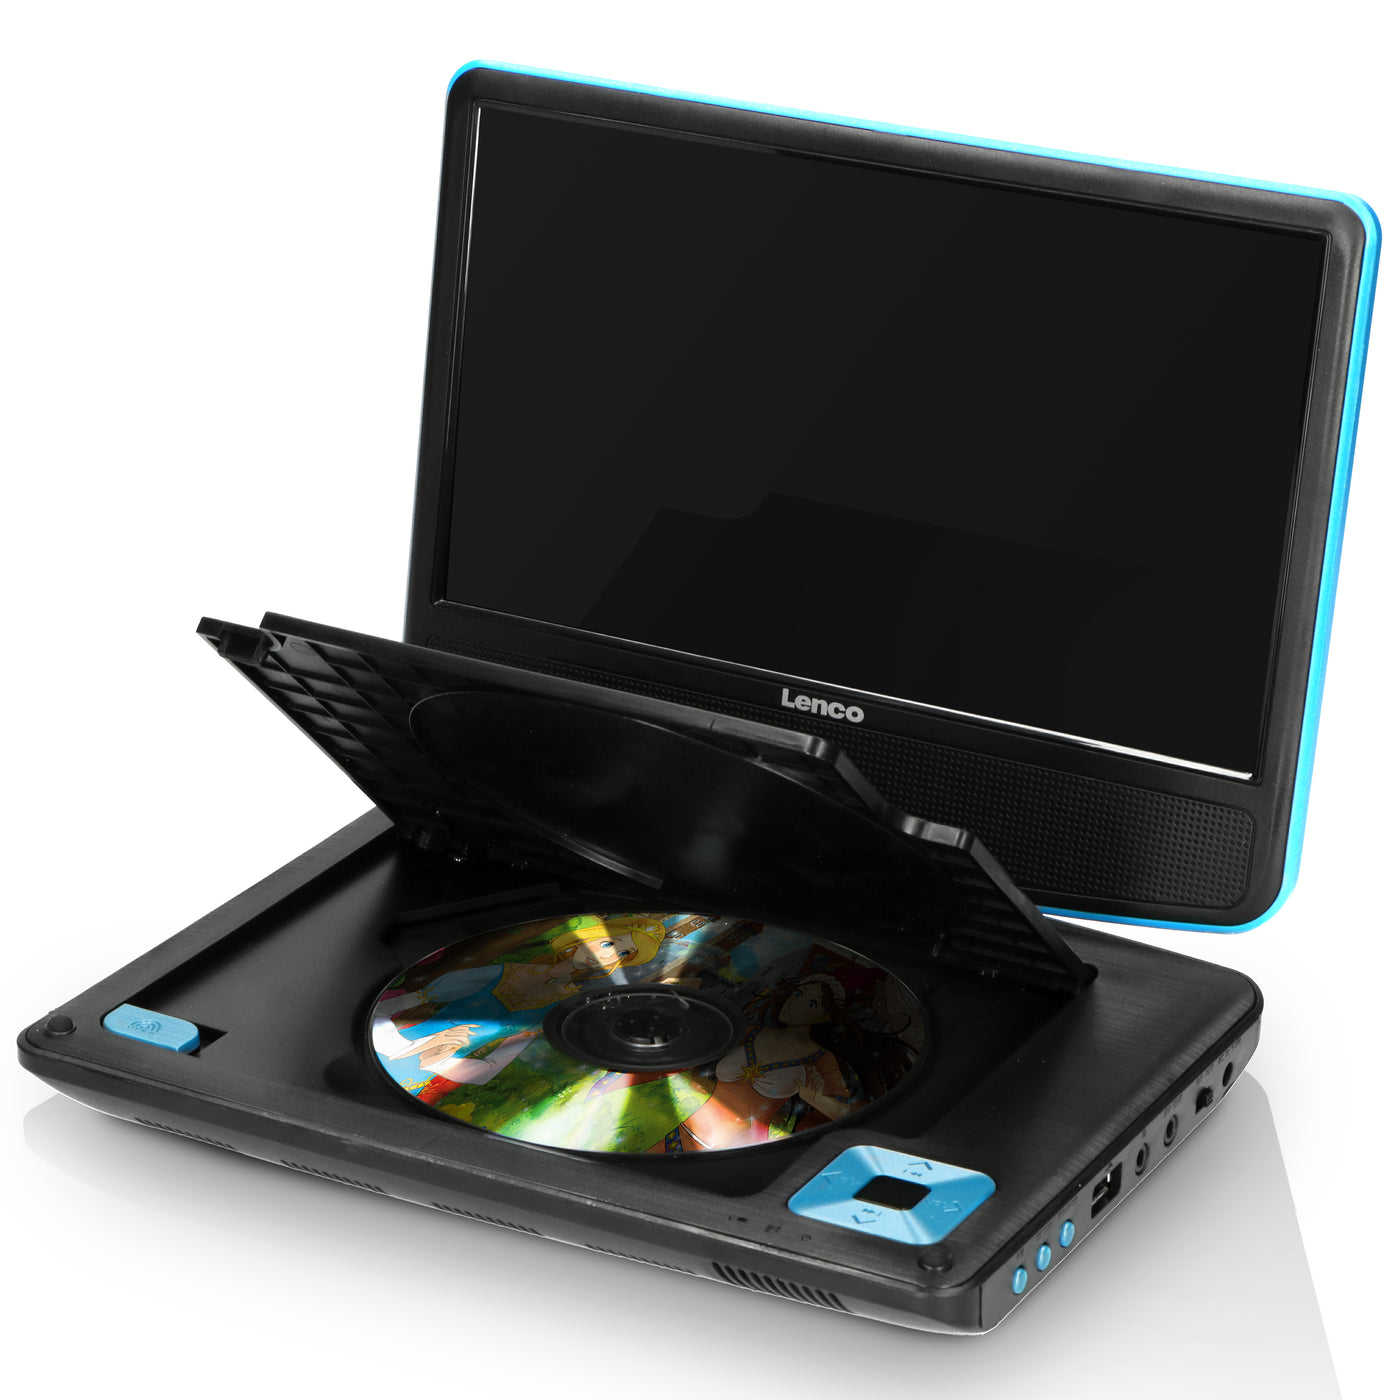 LENCO DVP-910BU - Przenośny odtwarzacz DVD 9" ze słuchawkami USB i uchwytem montażowym - Niebieski/czarny